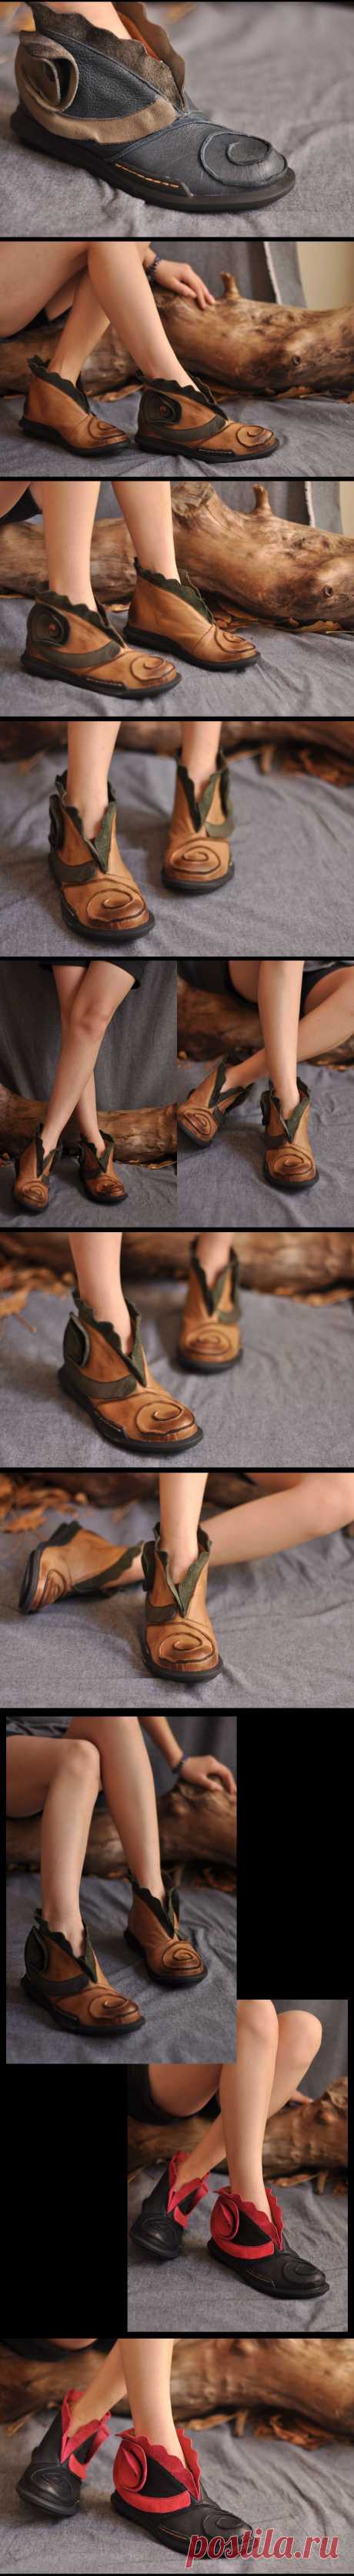 Обувь : Кожаные ботинки на литой подошве декорированные цветком и рюшей из кожи